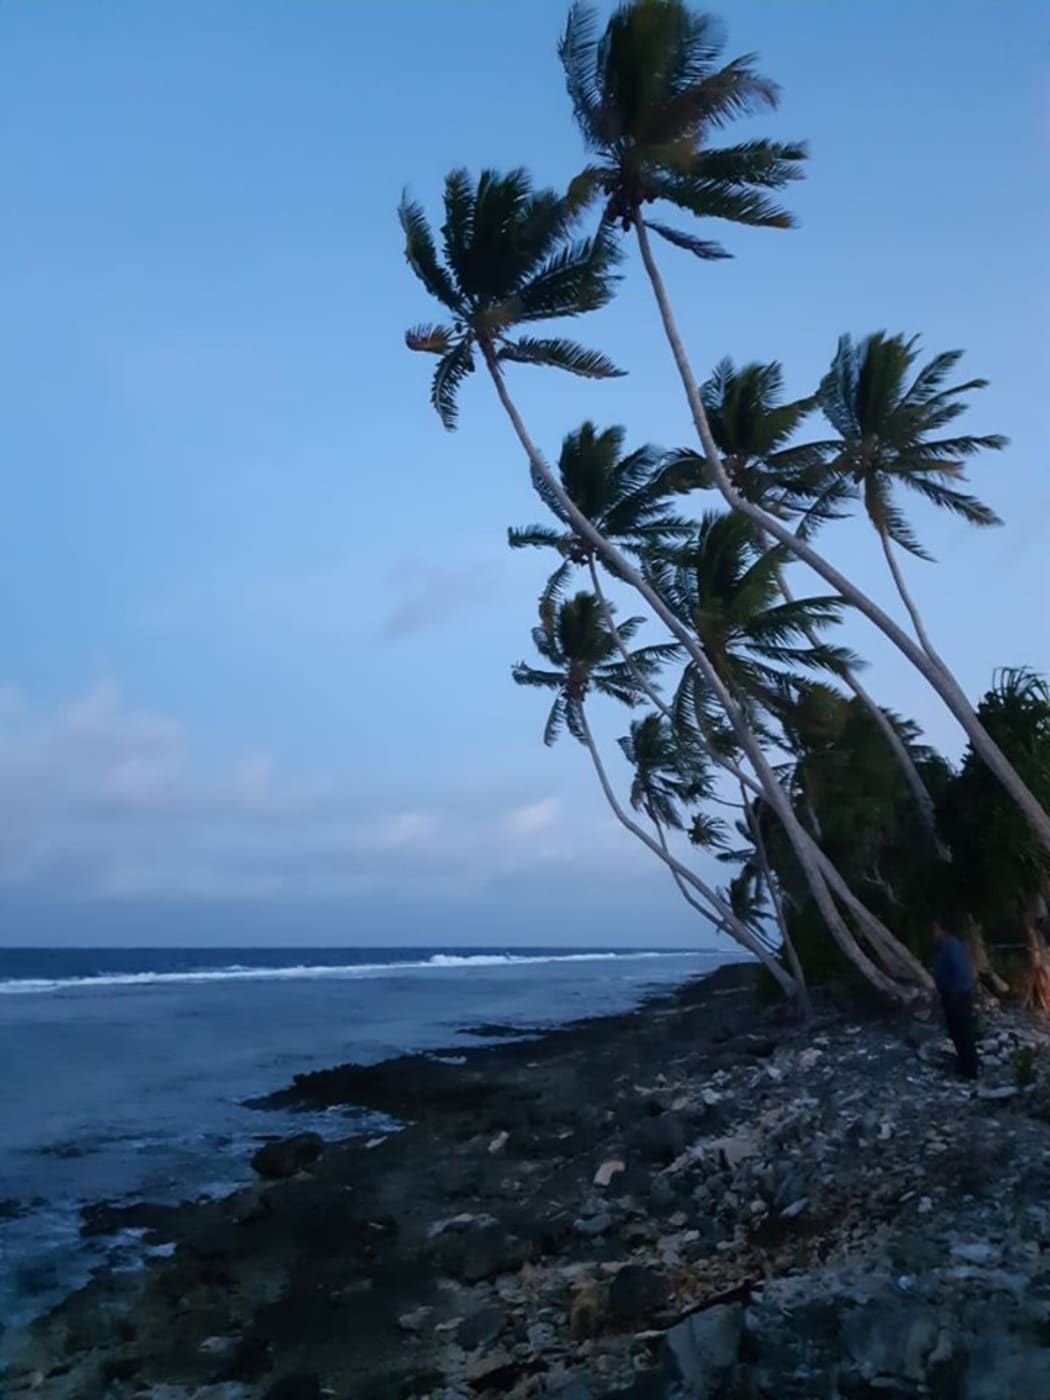 The shoreline along Tuvalu's Funafuti